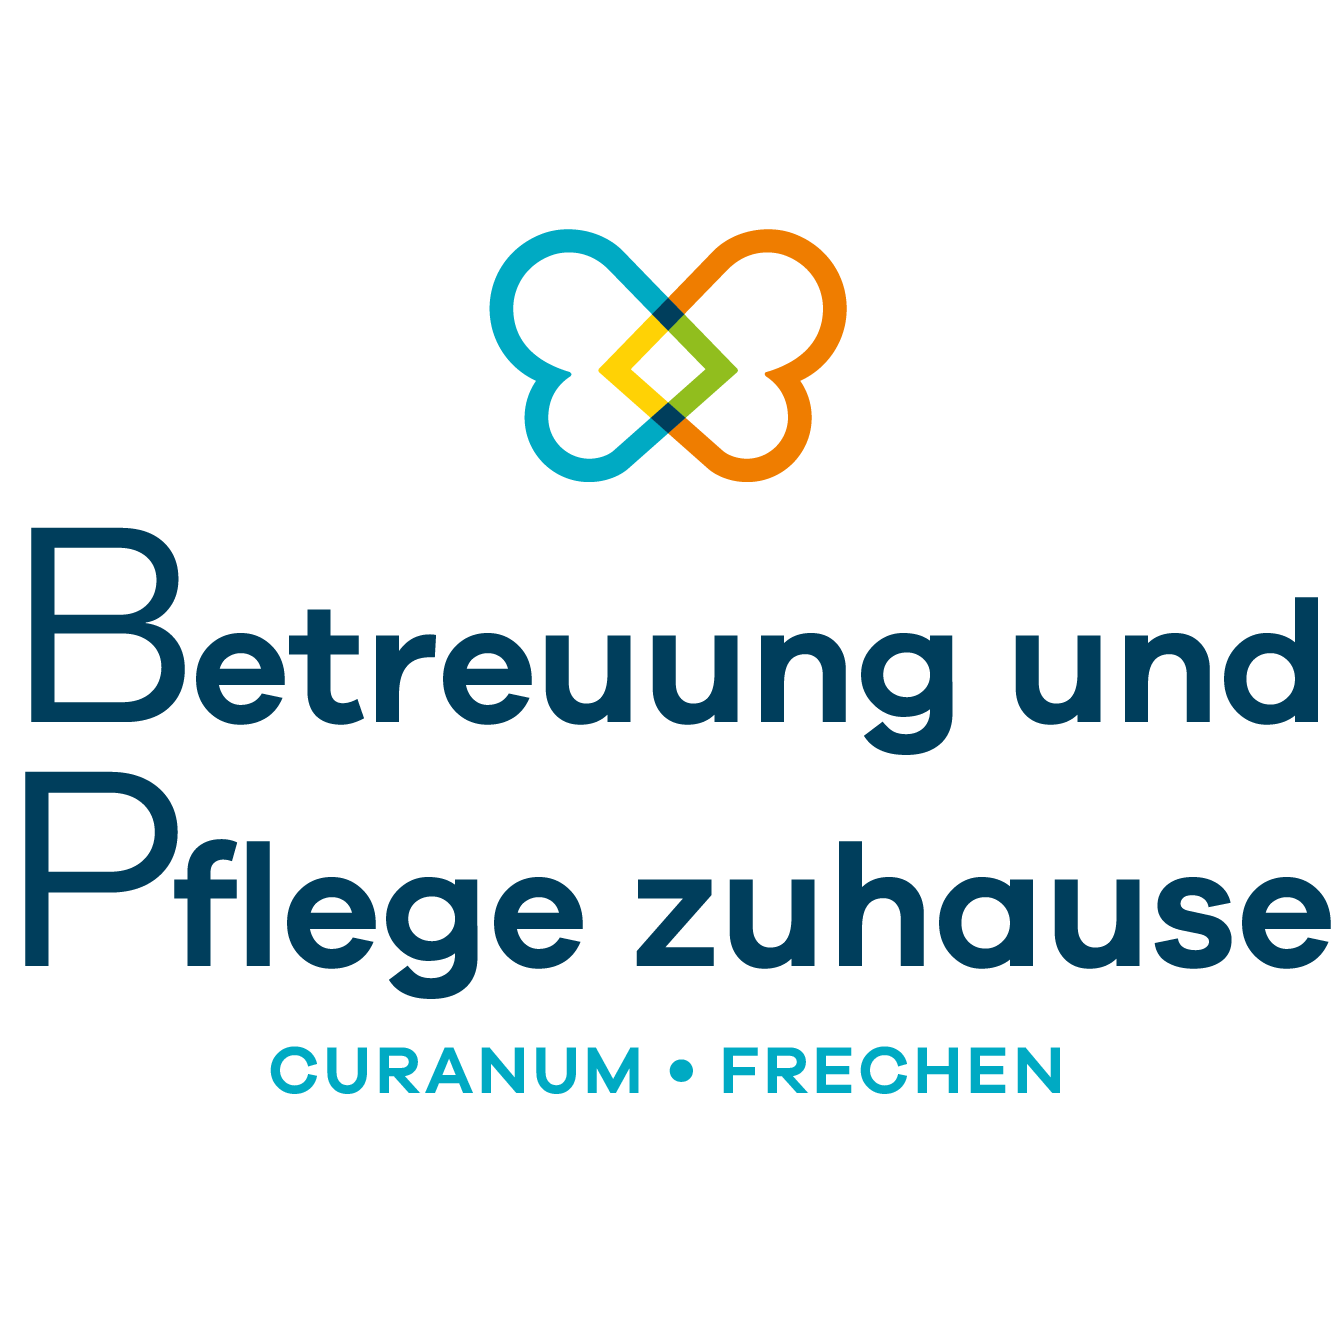 Betreuung und Pflege zuhause Curanum Frechen in Frechen - Logo